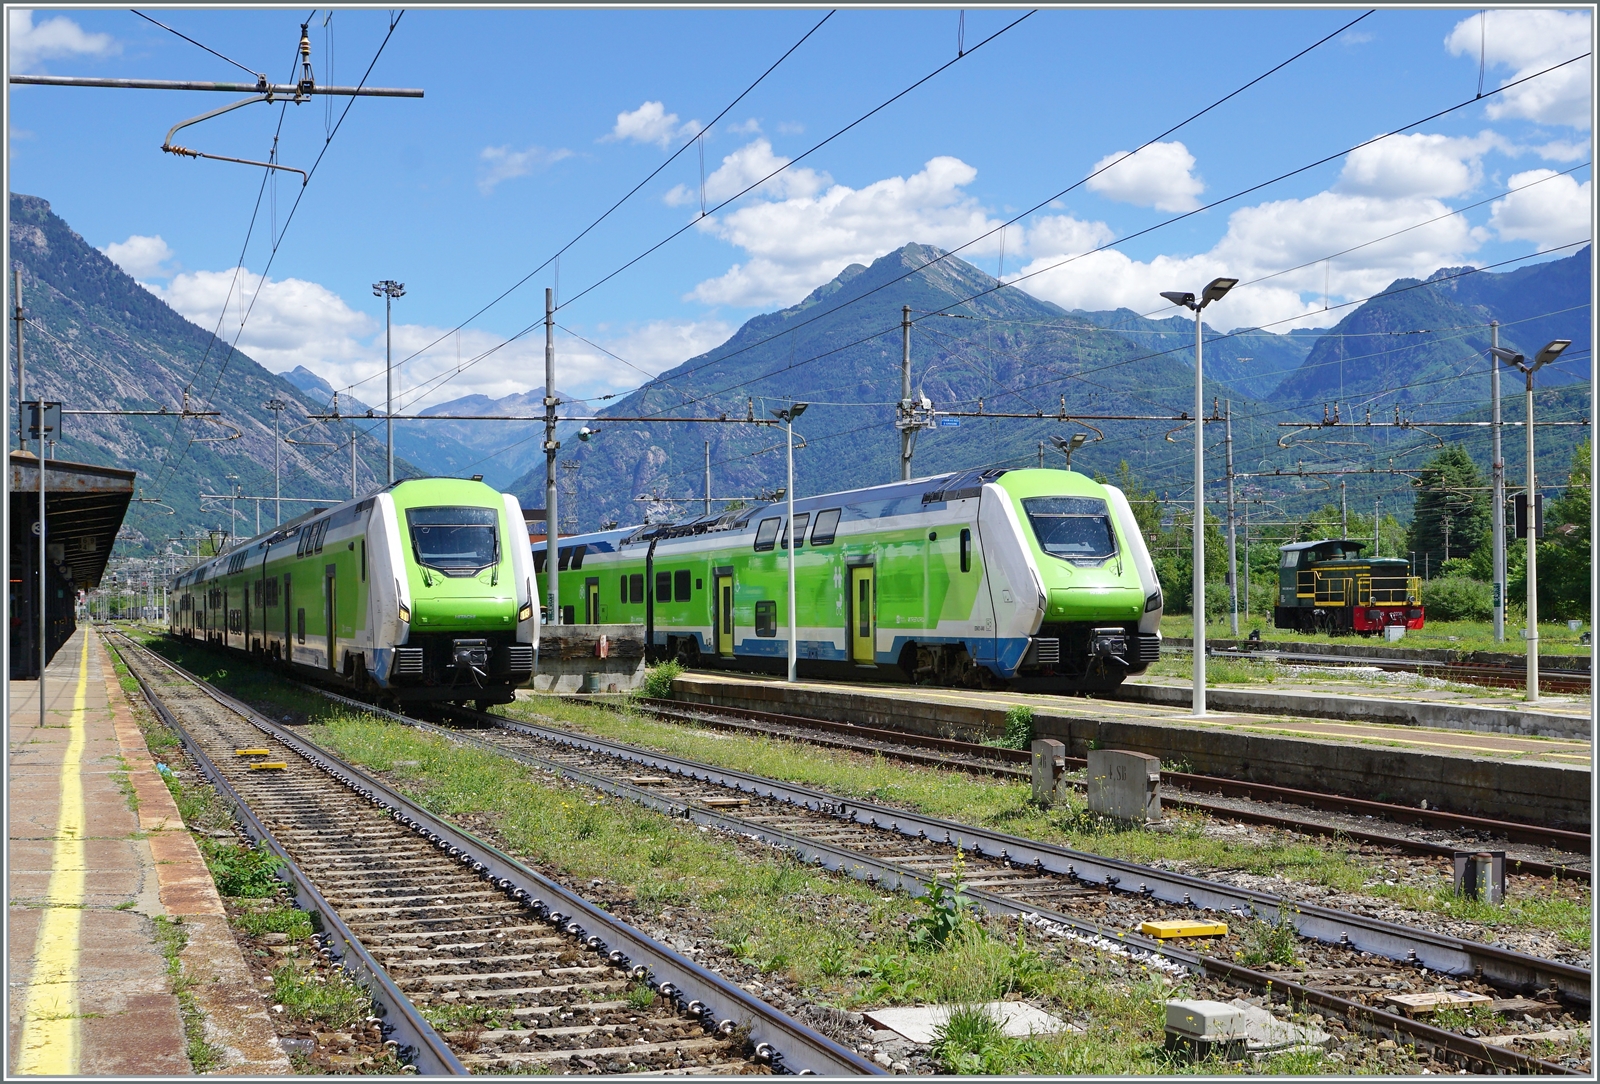 Die Trenord  Rock  Triebzüge ETR 421 020 und 421 040 warten in Domodossola auf ihren nächsten Einsatz. 

25. Juni 2022